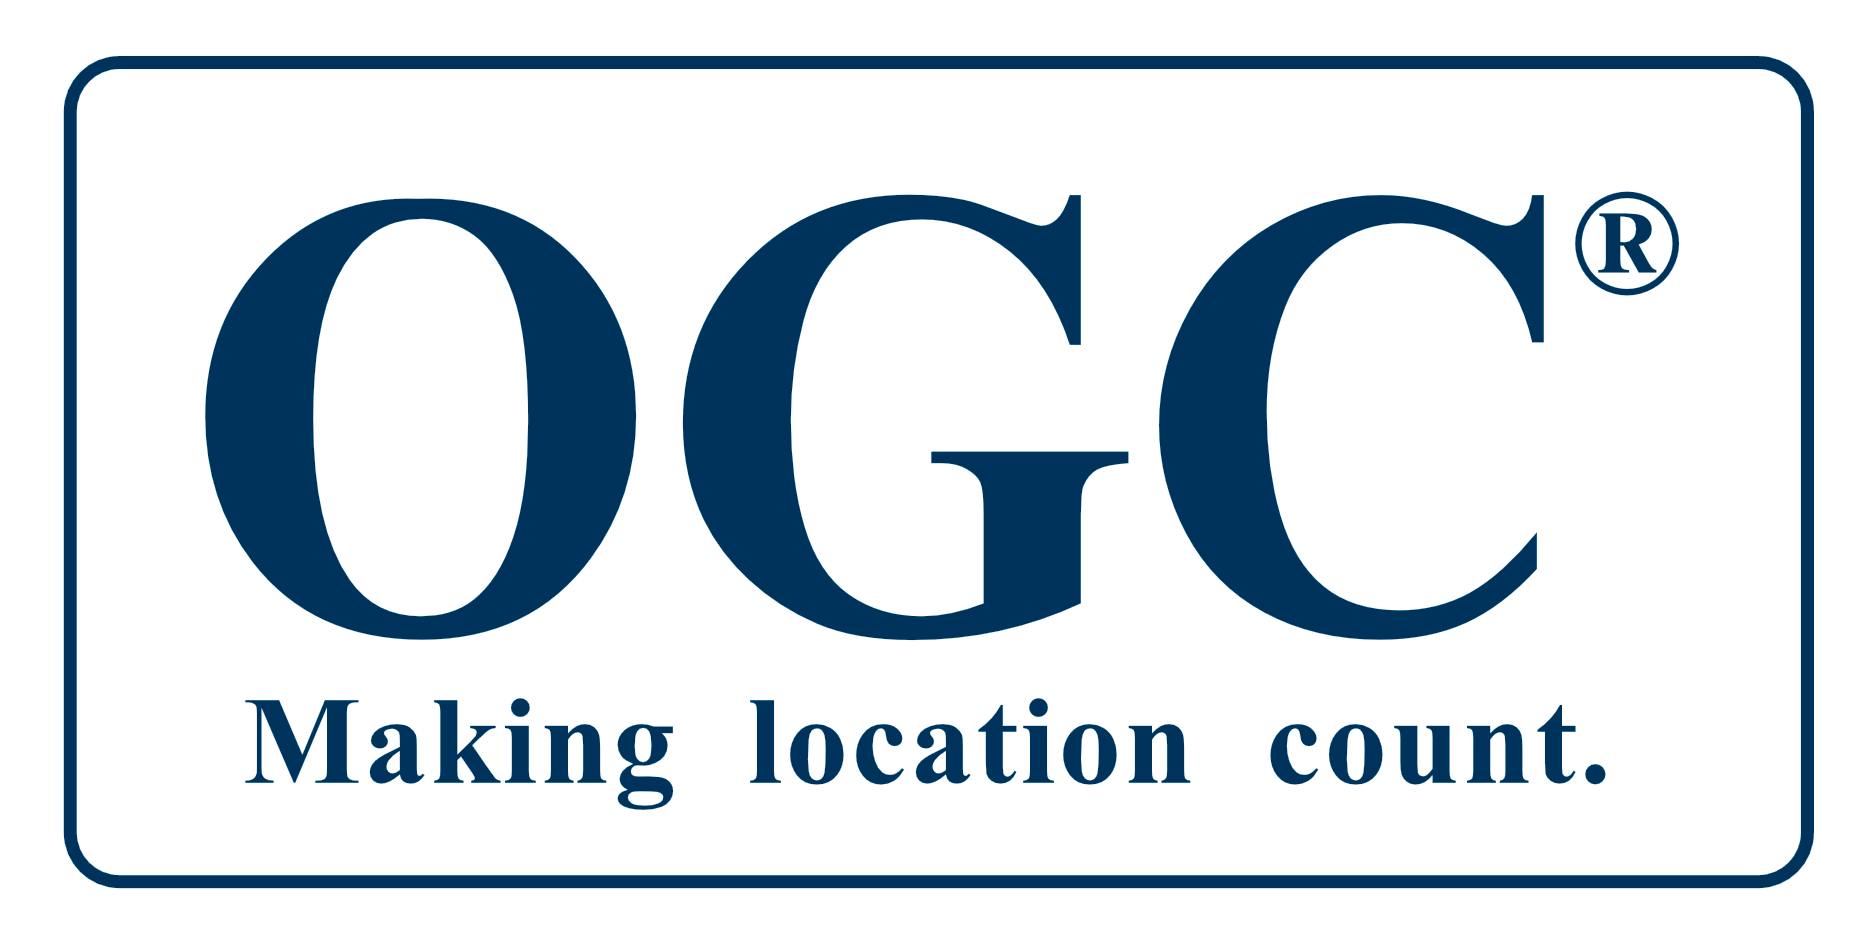 Open Geospatial Consortium (OGC)